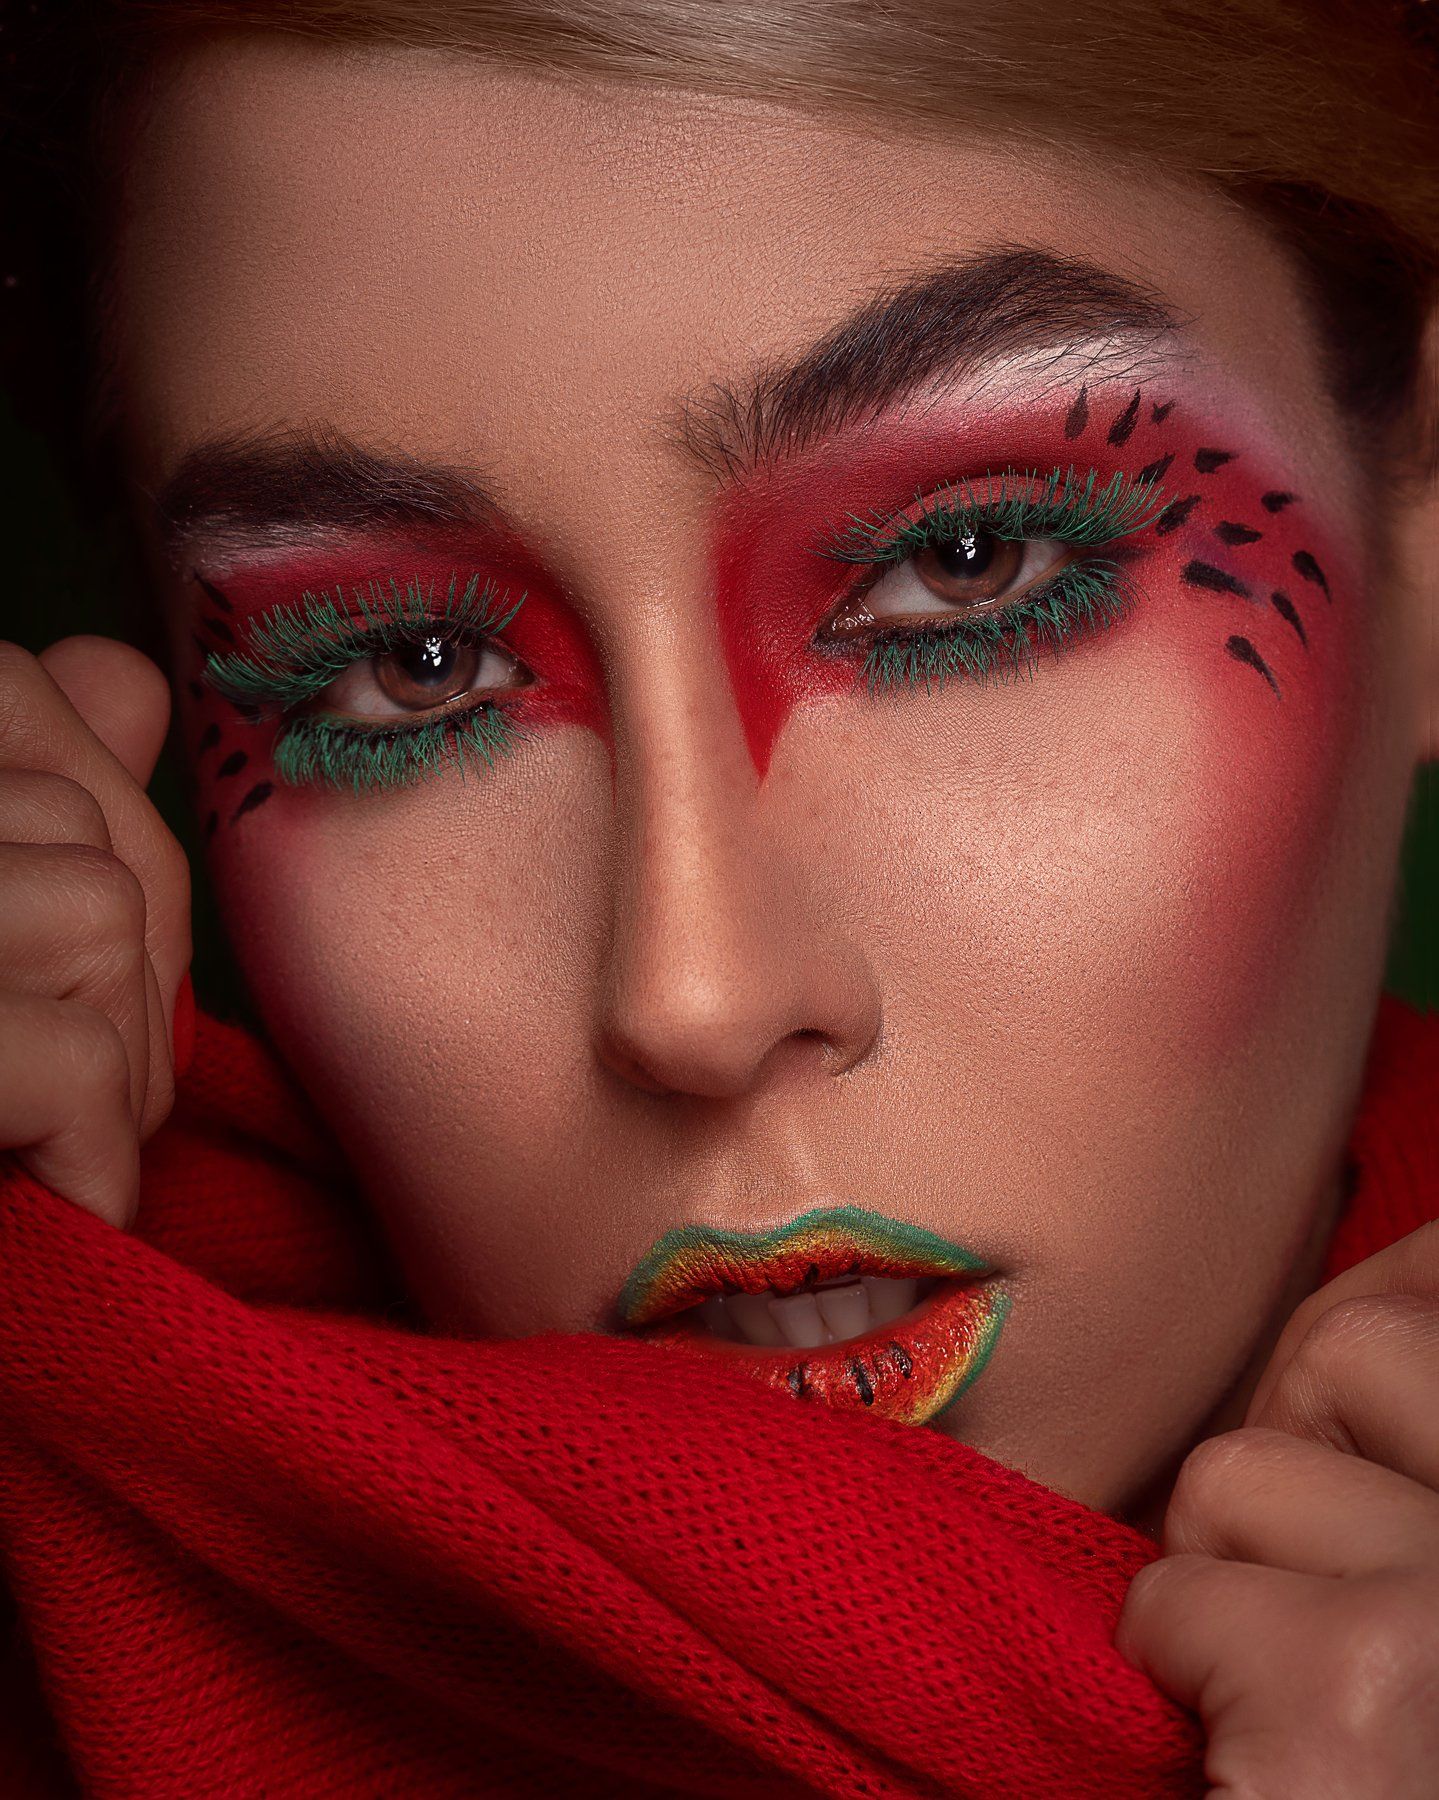 #photo #portrait #female #photoshop #photography #closeup #makeup, amir seilsepour